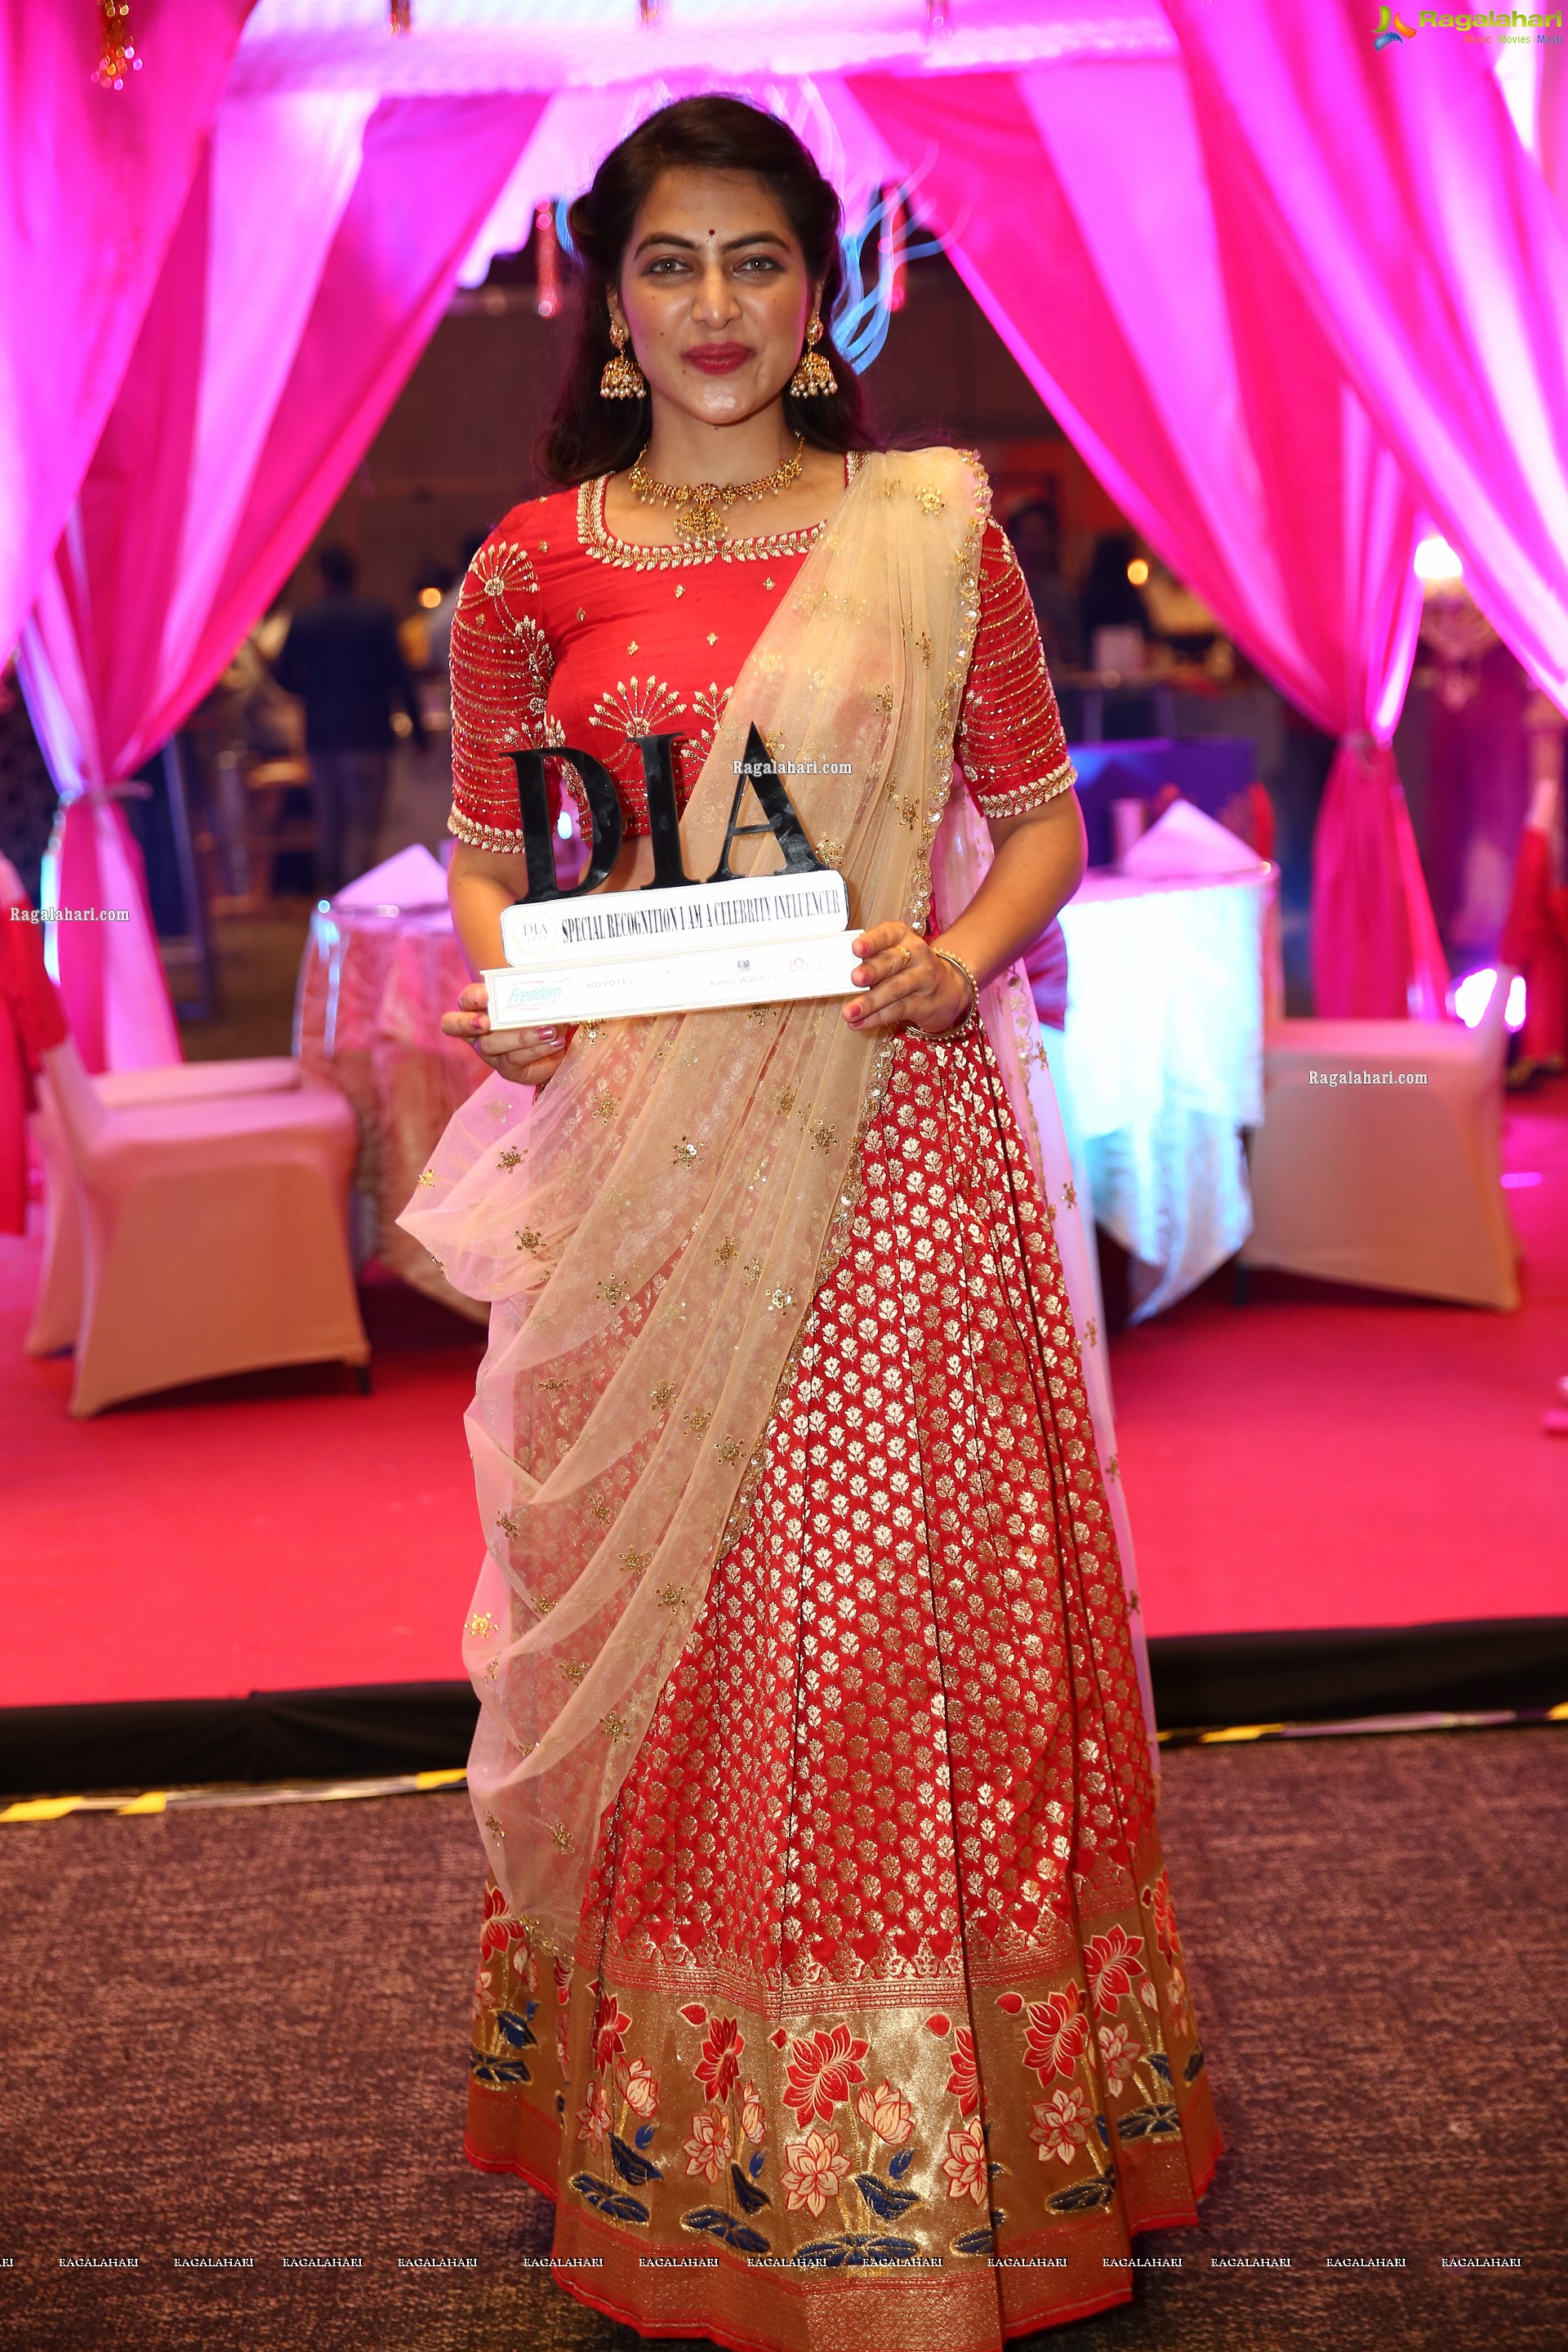 Supraja Reddy at DIA 2021 Awards, HD Photo Gallery